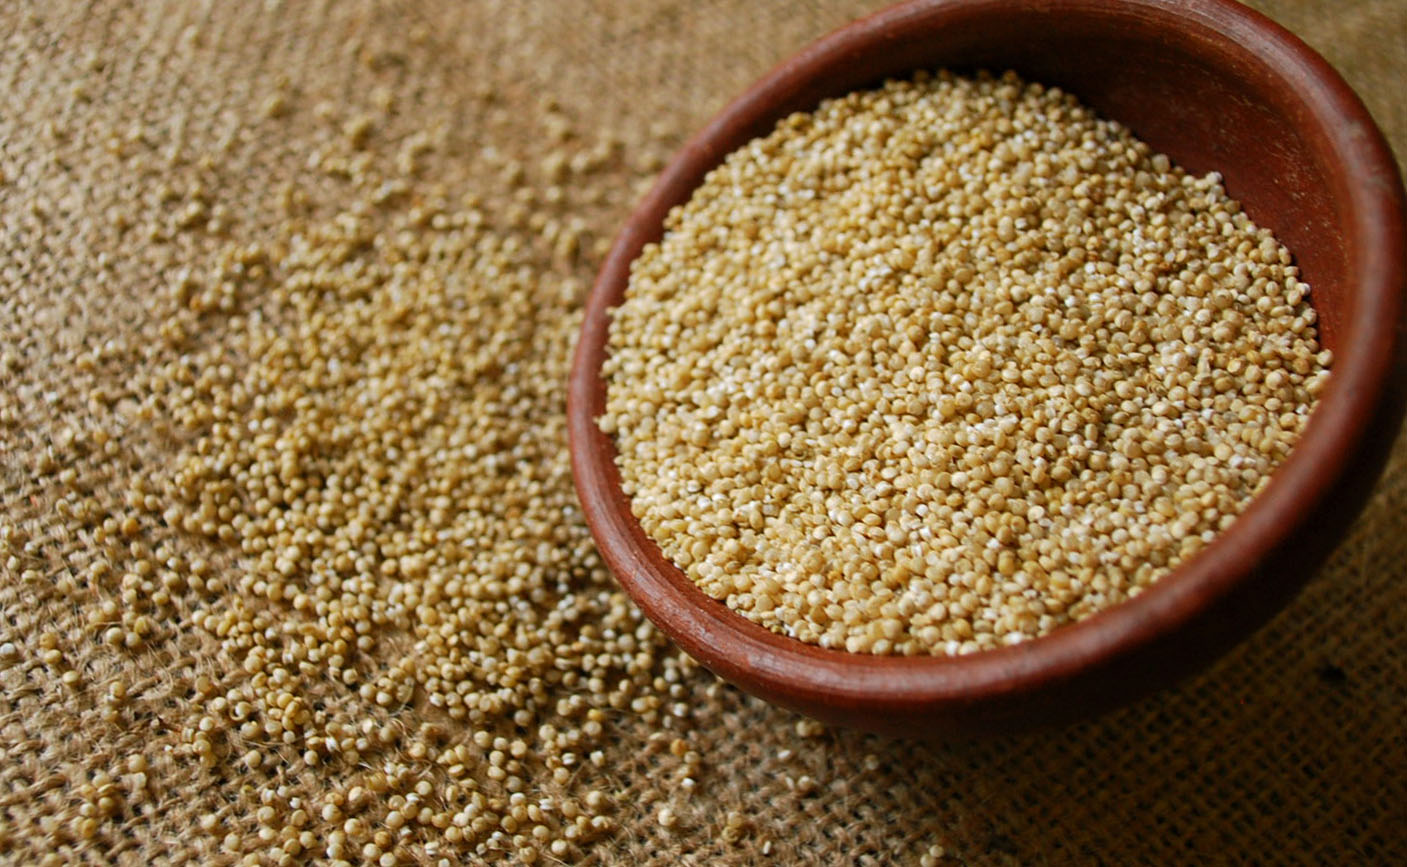 quinoa1